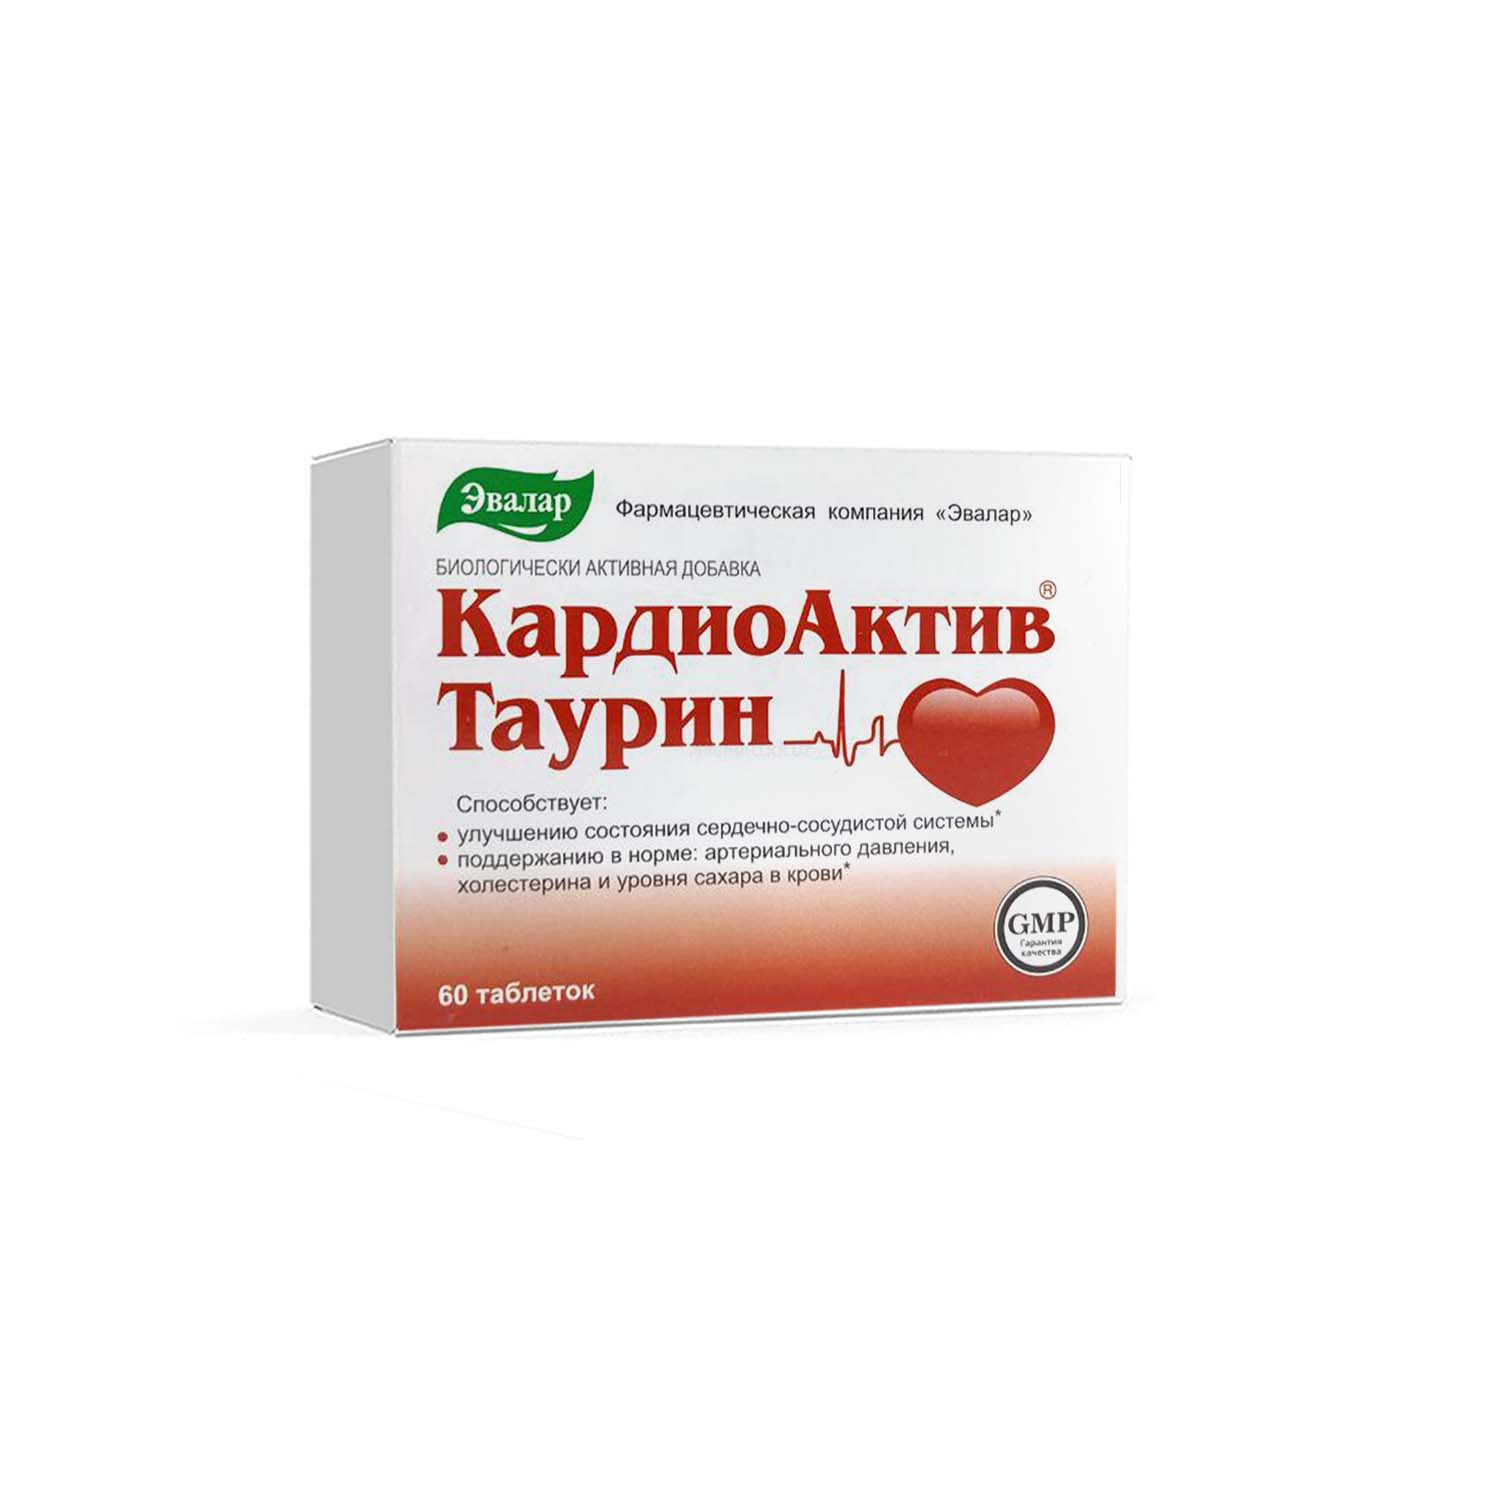 Кардиоактив® Таурин, таблетки №60 по 0,6 г блистер